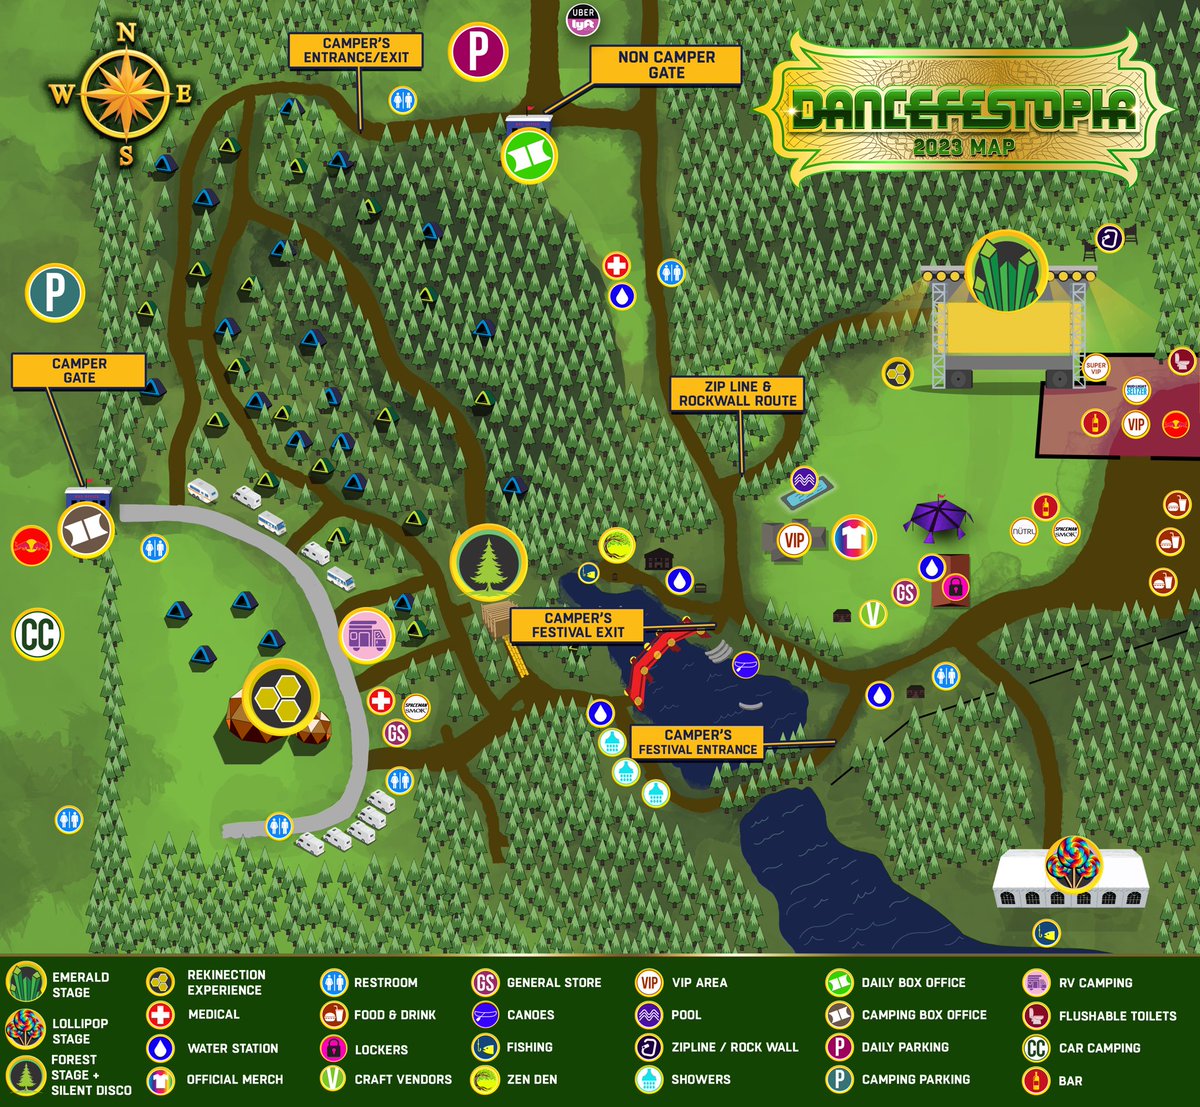 Dancefestopia map